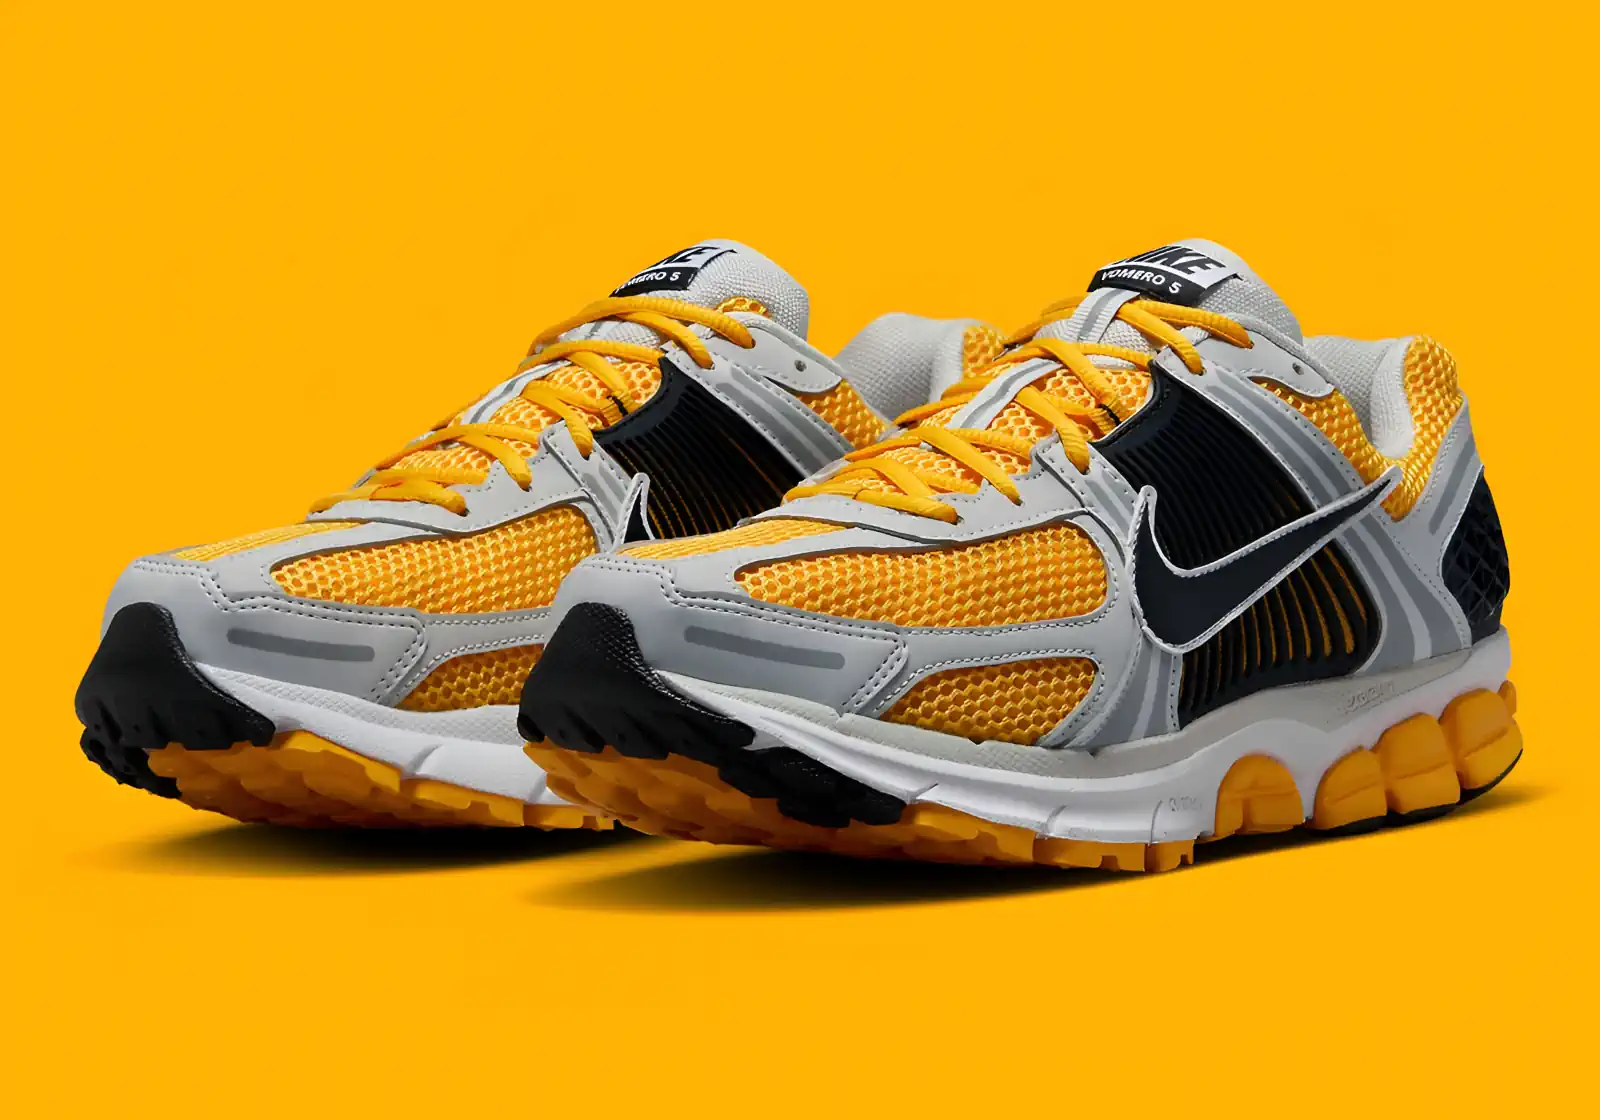 La Nike Zoom Vomero 5 “Citrus Yellow” fait irruption sur la scène avec un flair vibrant